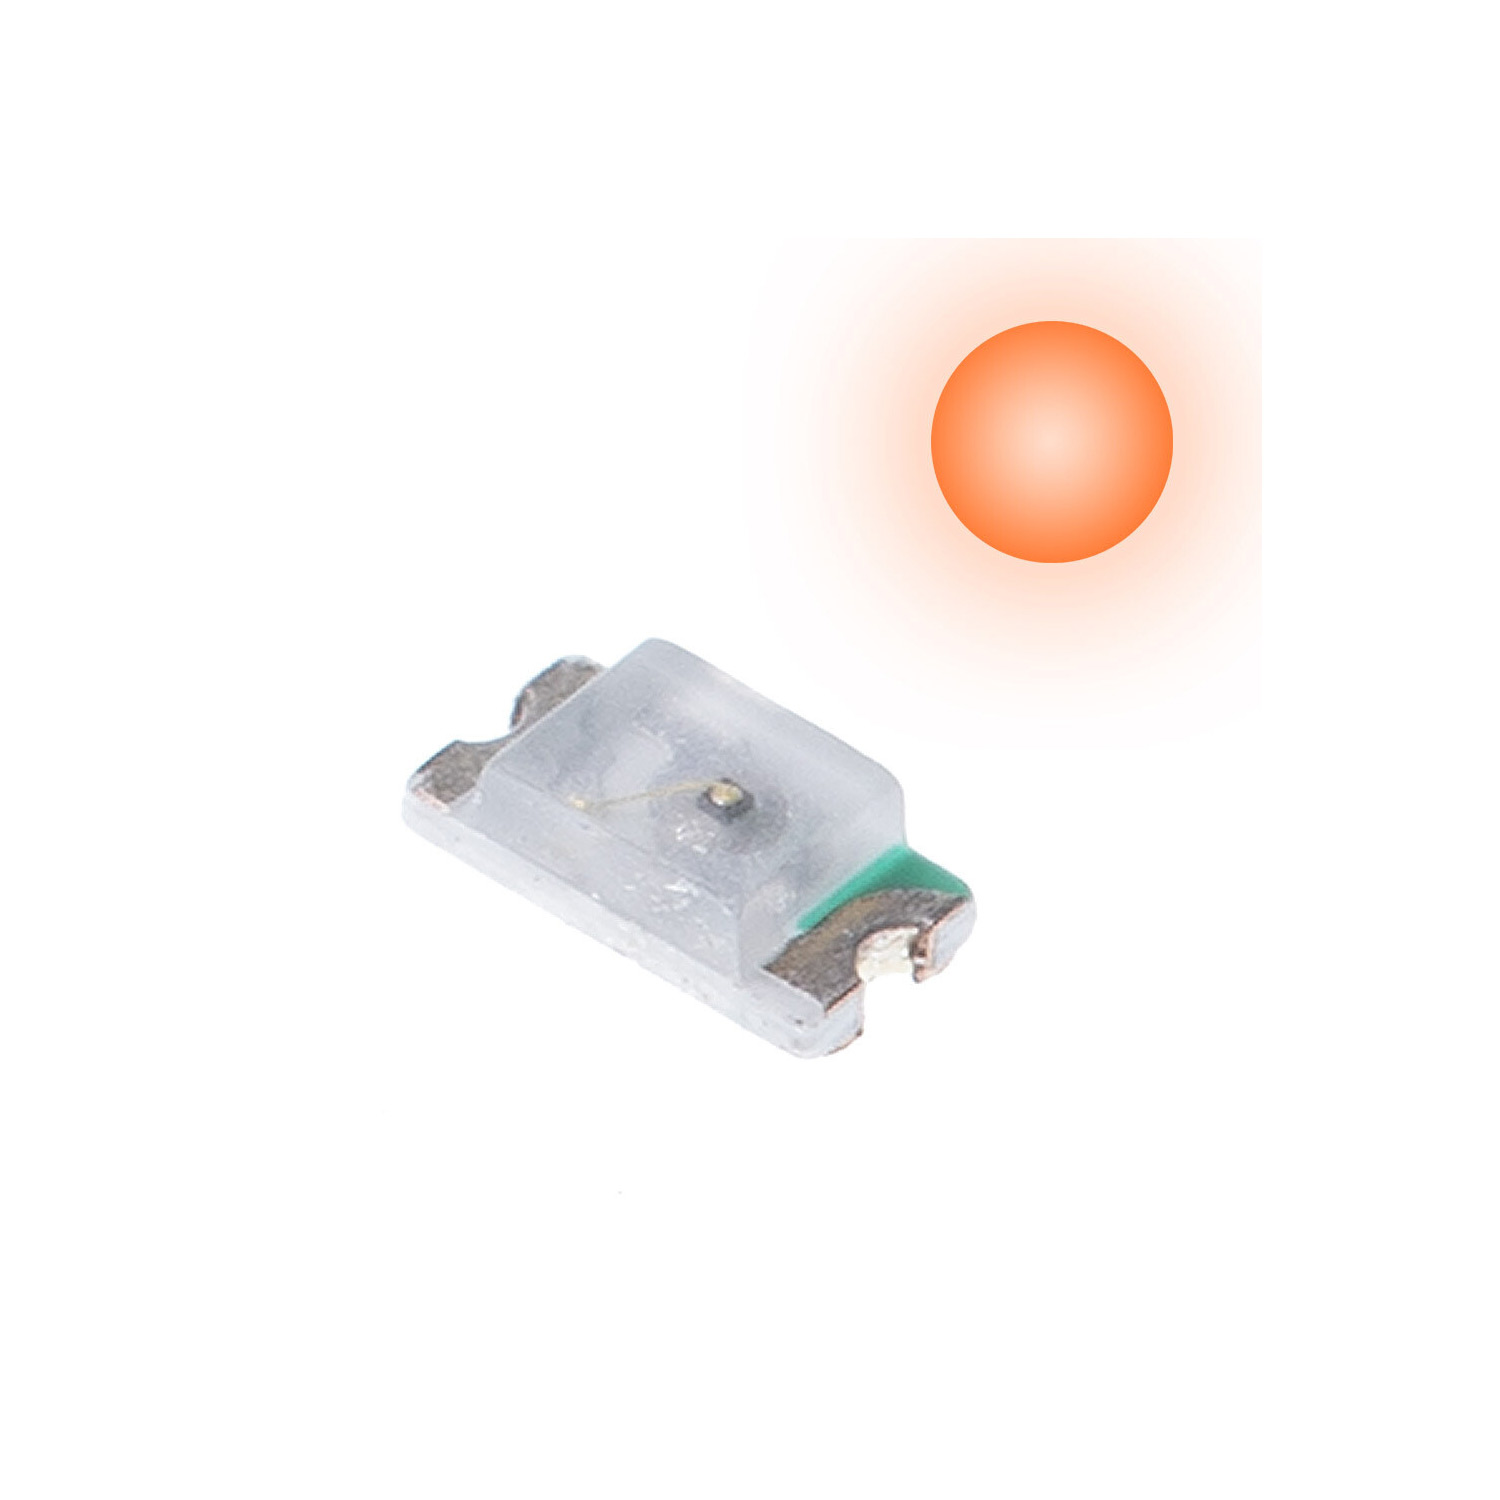 2 x SMD LED (oranje)